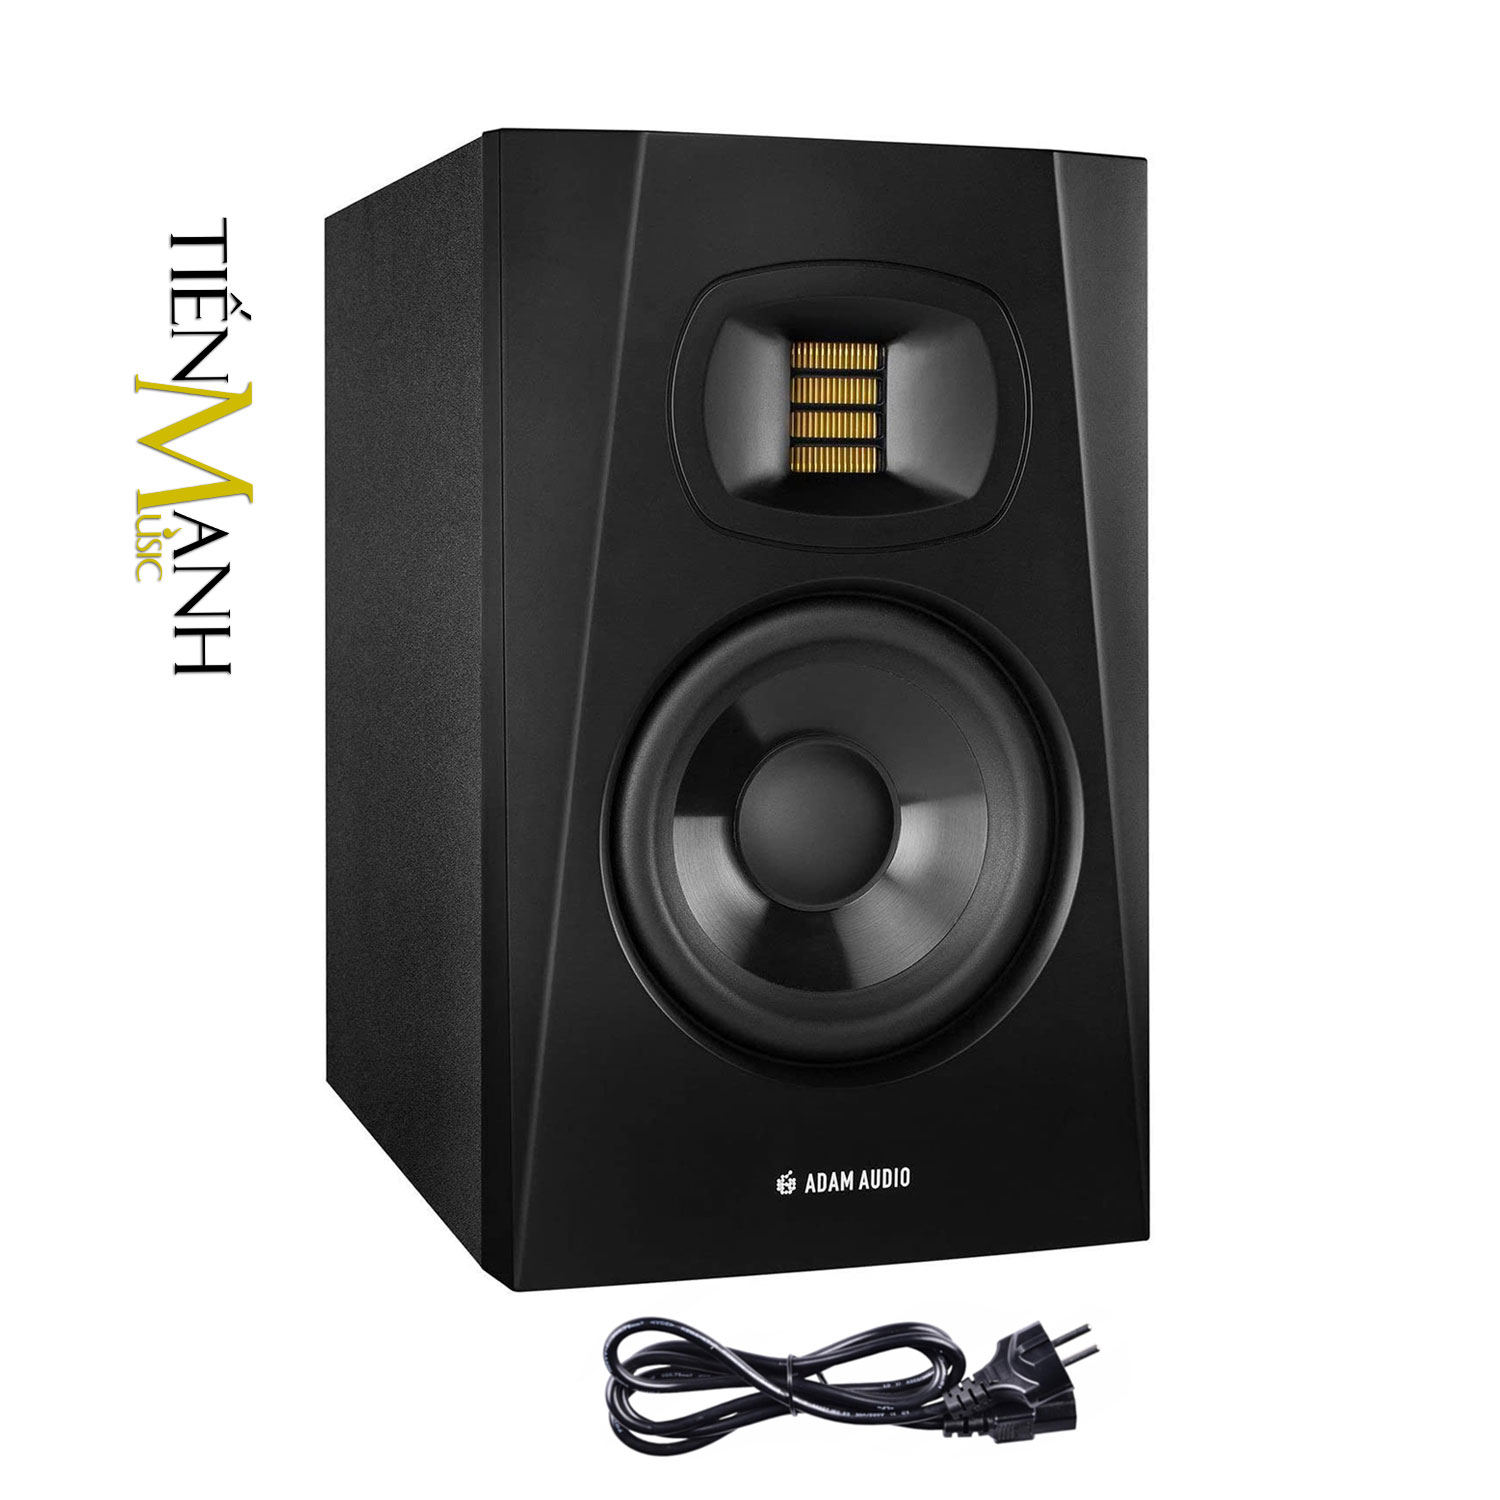 [Một Cái] Loa Kiểm Âm Adam Audio T7V - Active Powered Phòng thu Studio Monitors Speaker Hàng Chính Hãng - Kèm Móng Gẩy DreamMaker